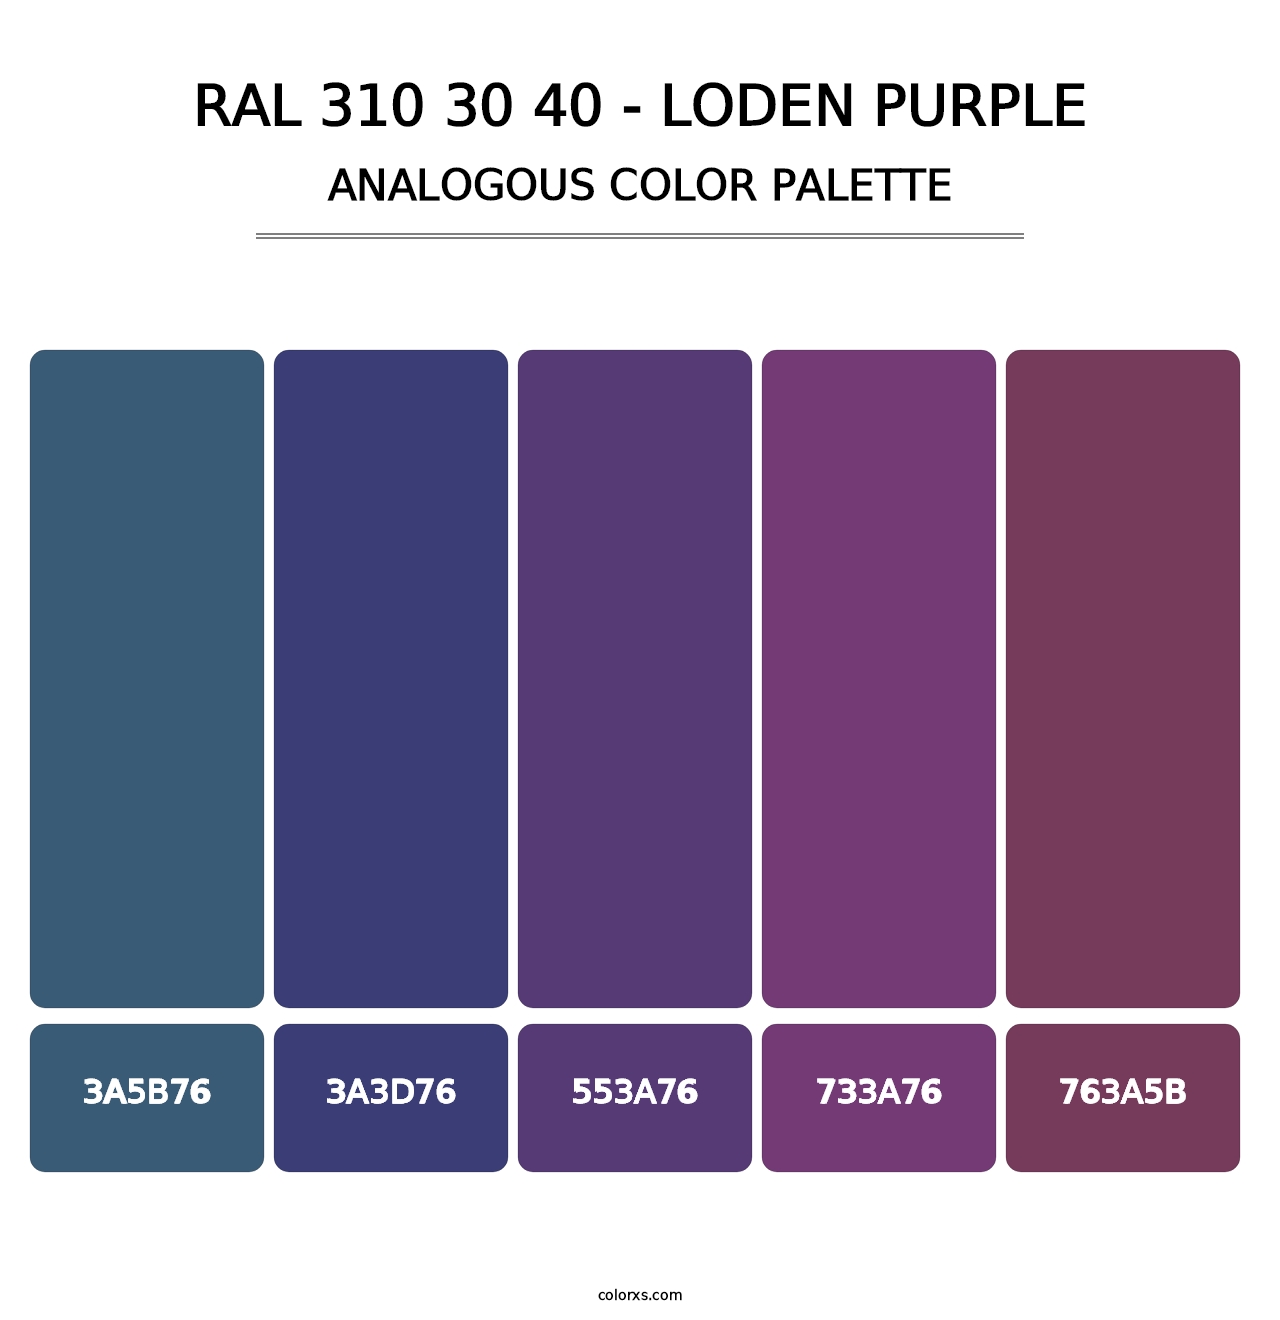 RAL 310 30 40 - Loden Purple - Analogous Color Palette